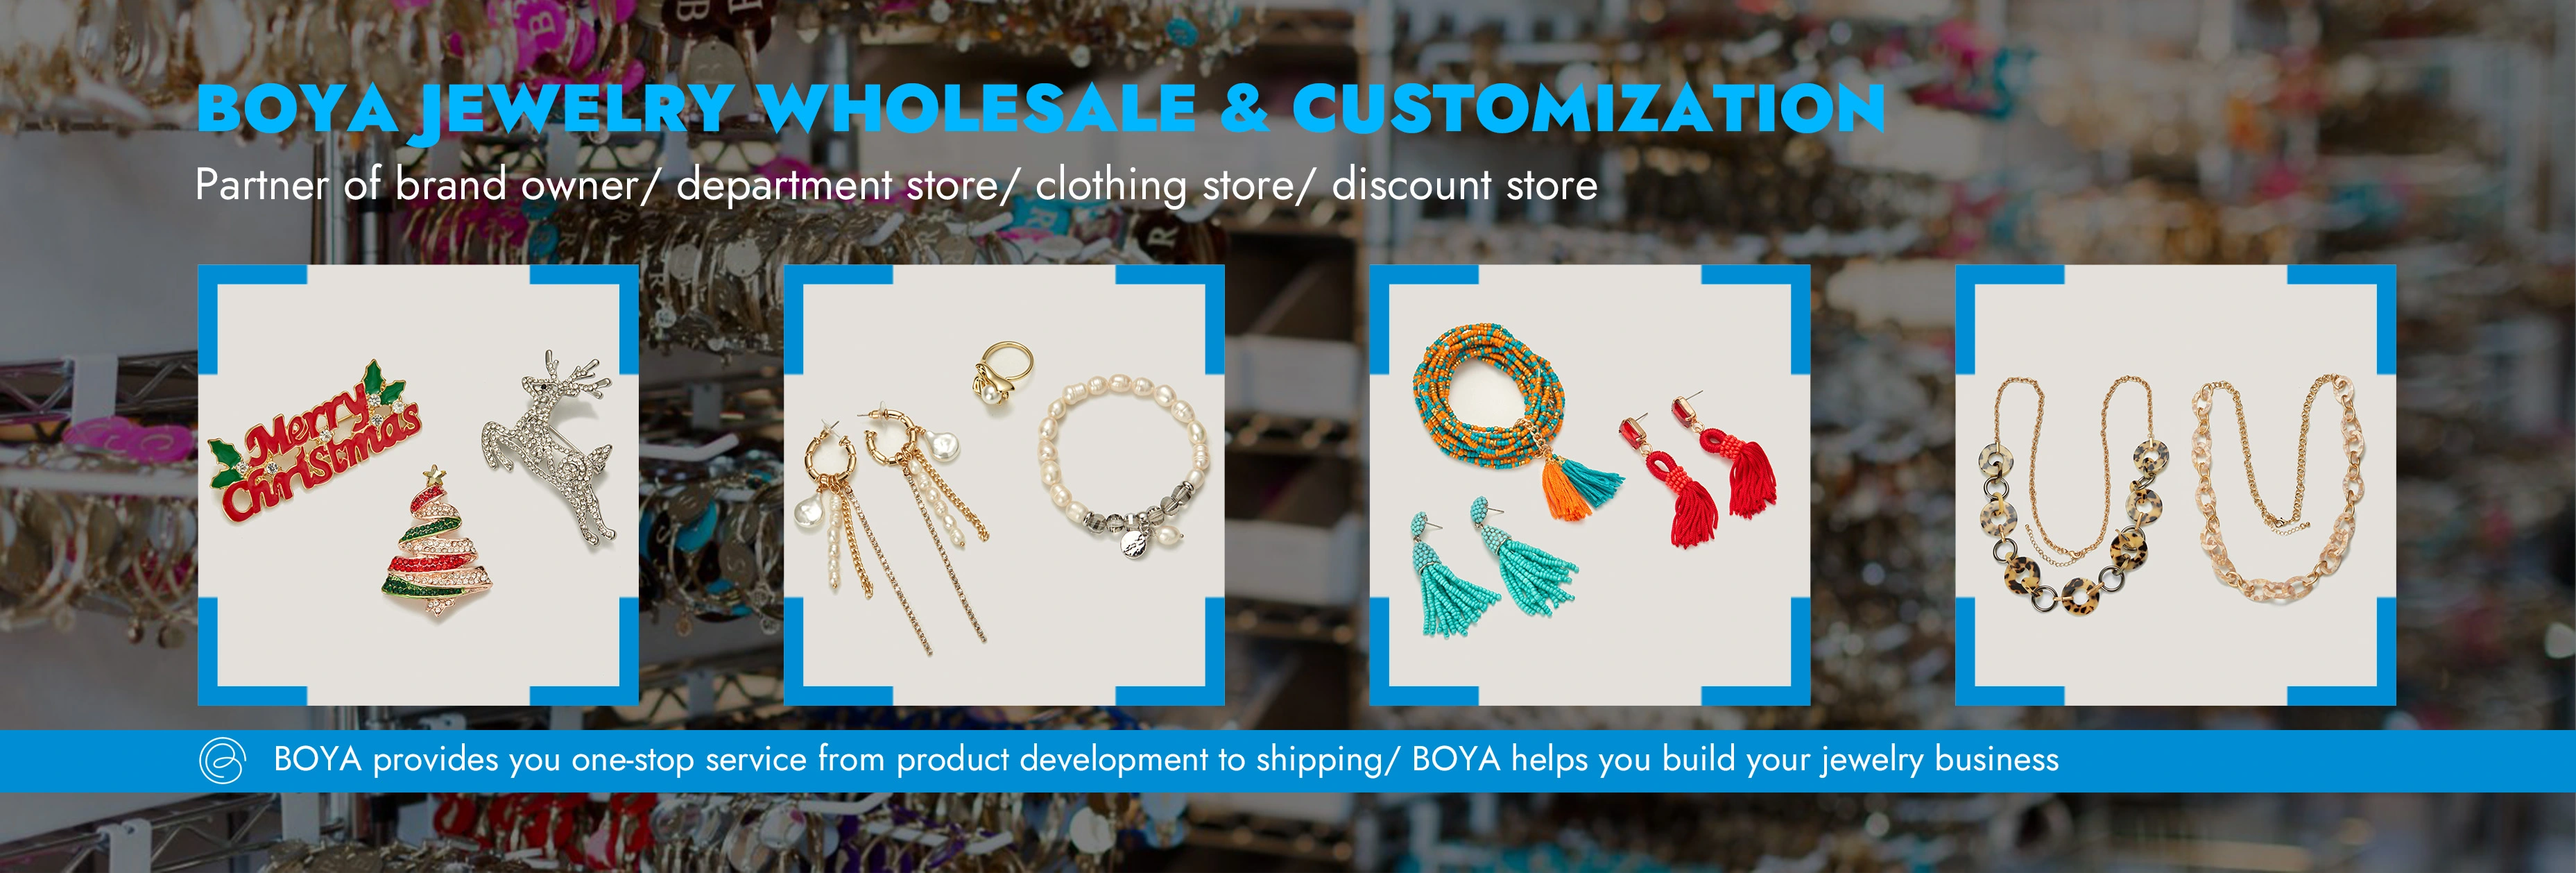 BOYA Jewelry Wholesale & Customization